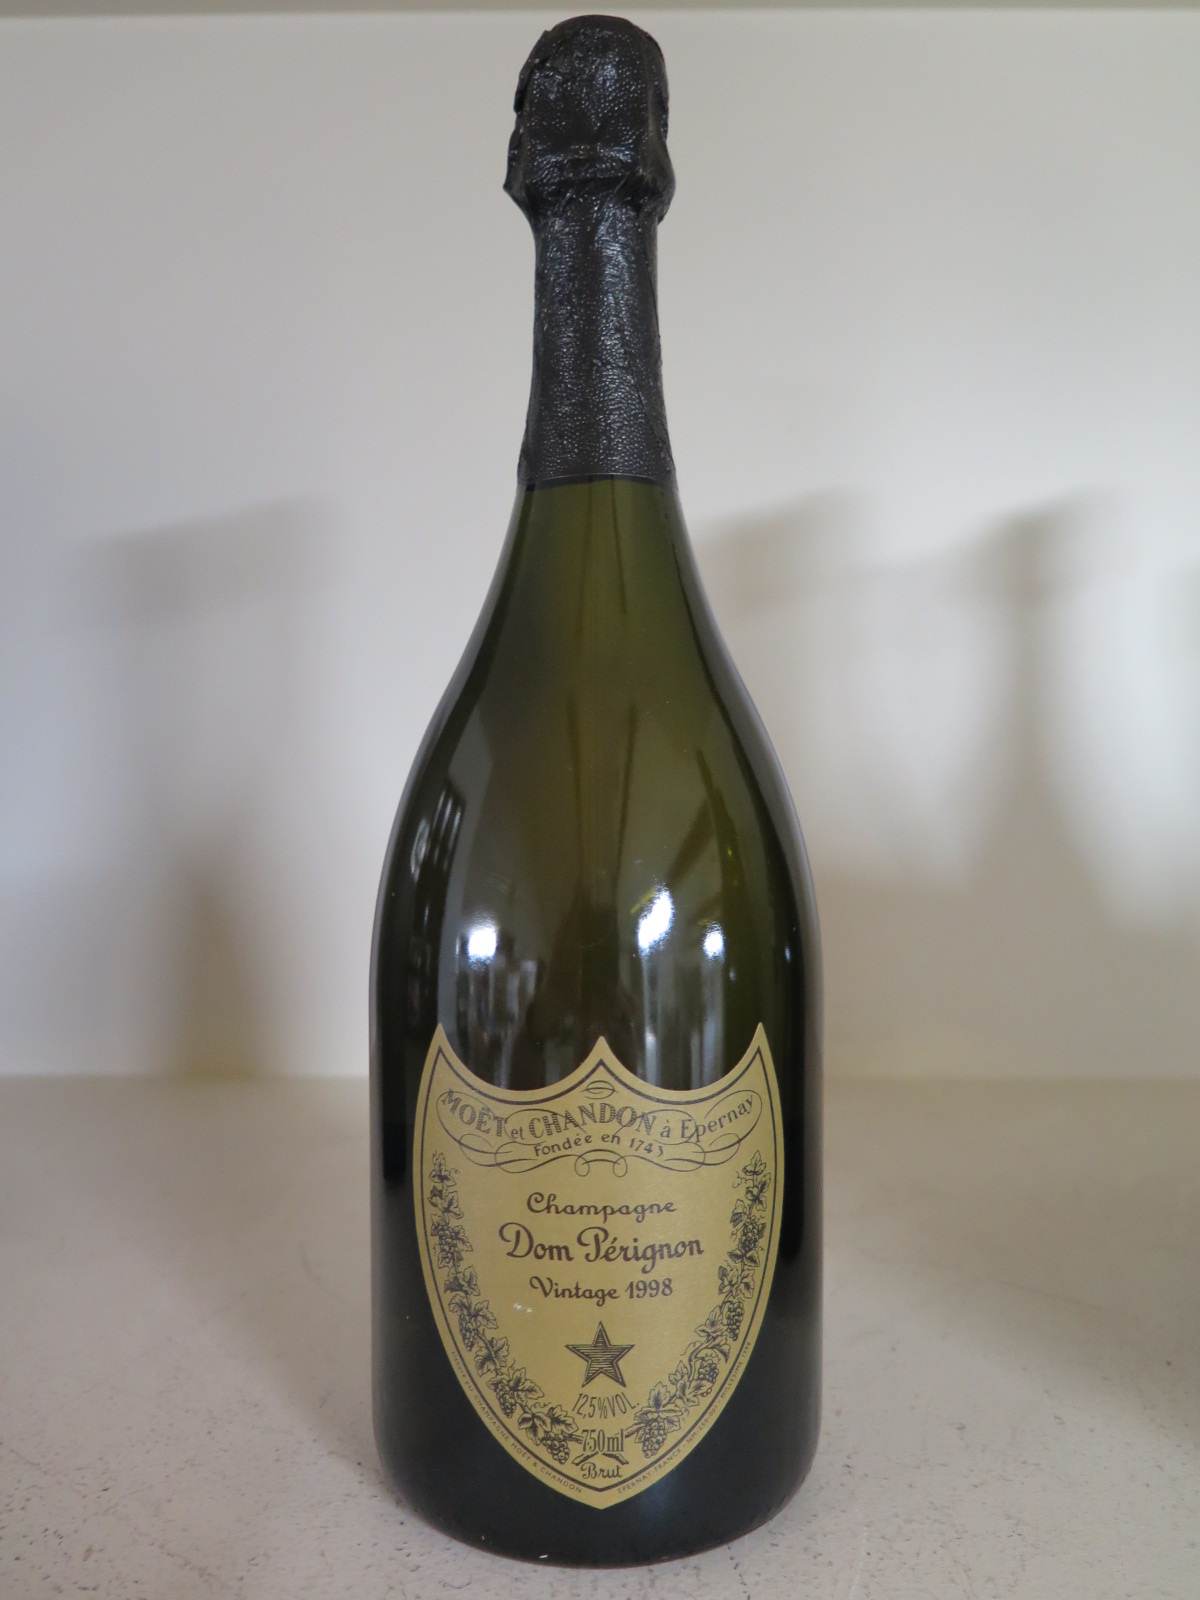 A bottle of Moet et Chandon Dom Perignon Vintage Champagne 1998 - 12.